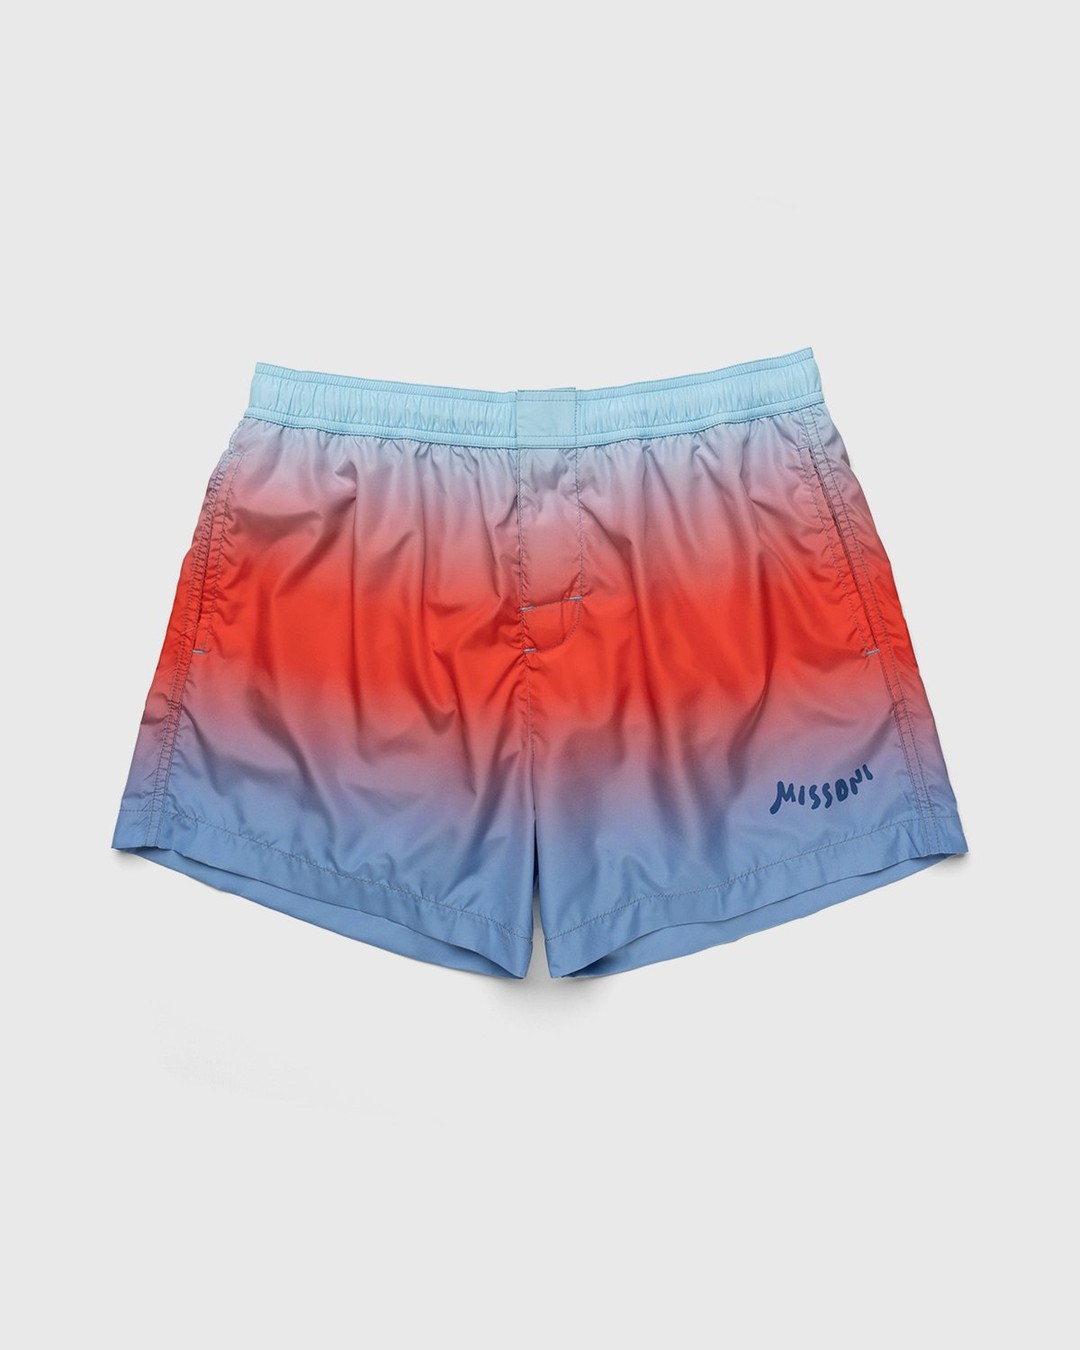 Missoni – Degrade Print Swim Shorts Light Blue - Shorts - Blue - Image 1